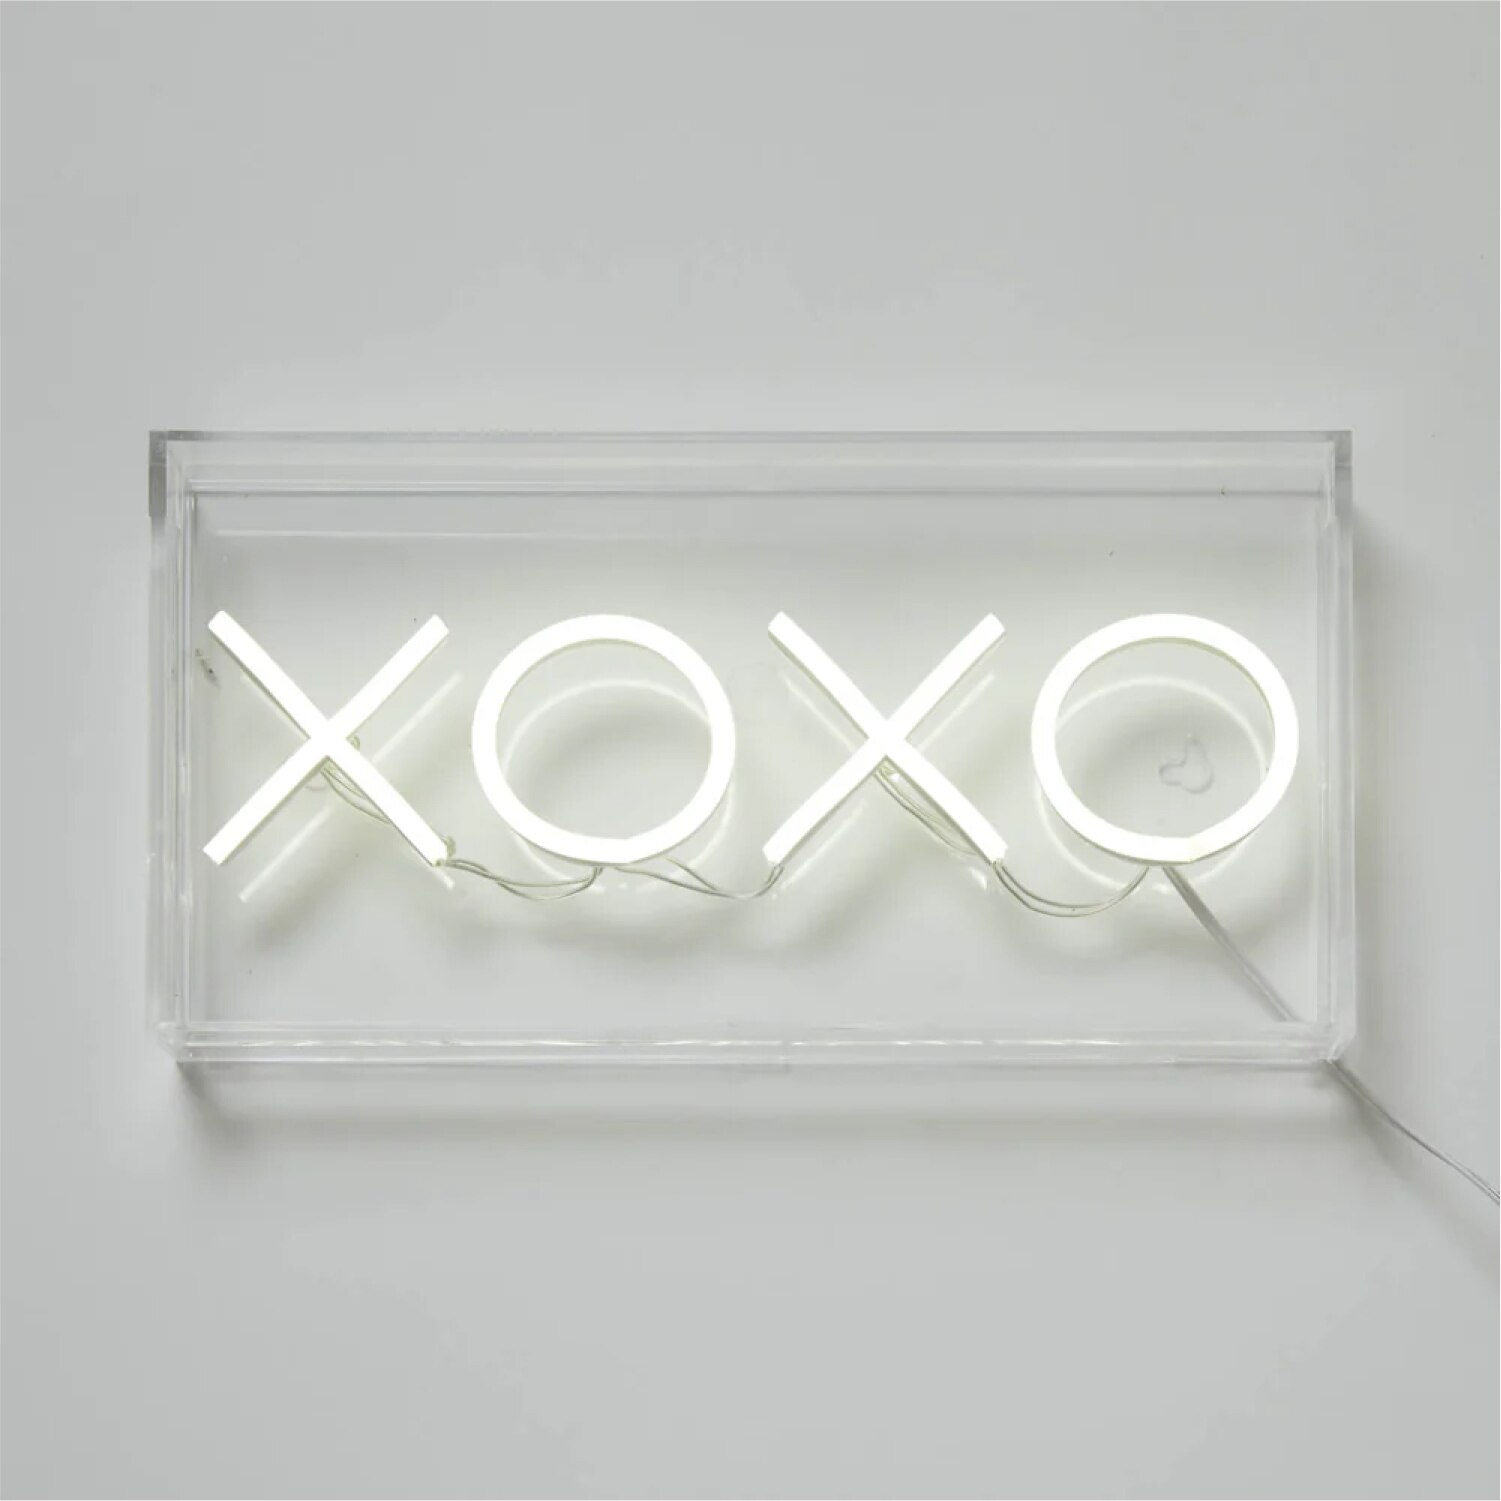 Dormify XOXO Neon Sign